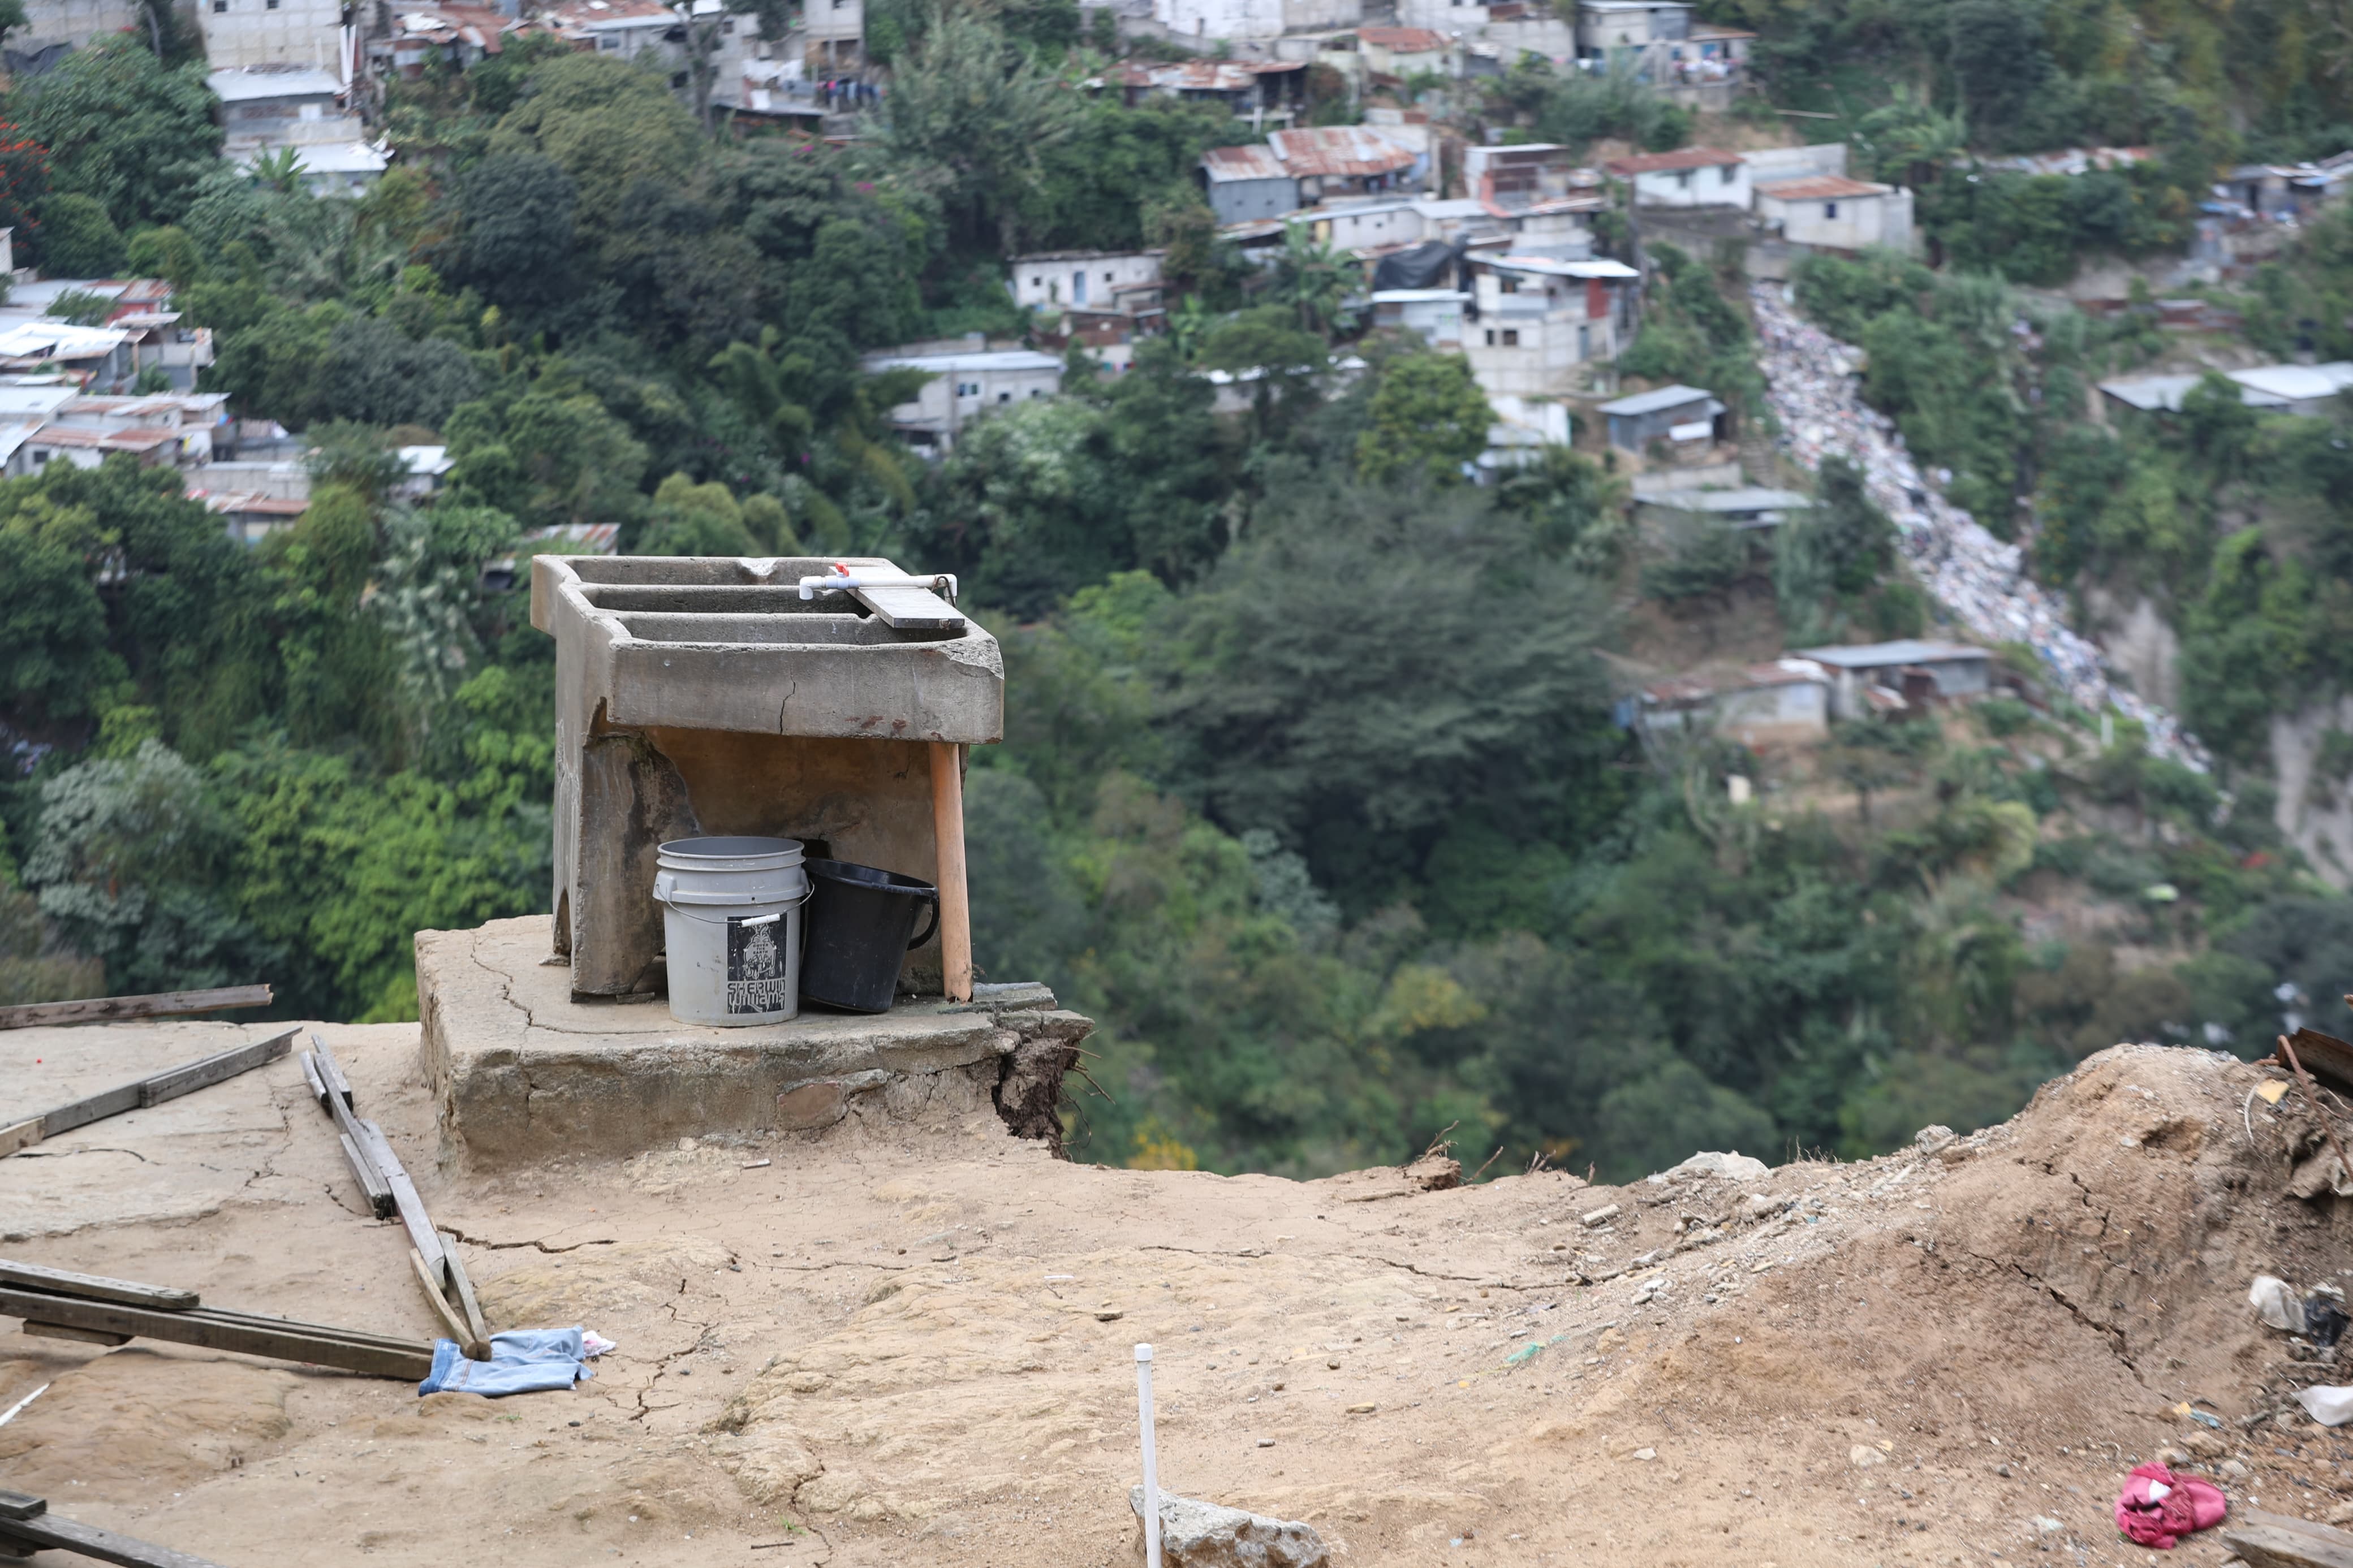 Varias casas del sector Las Calaveras, en el Barrio El Gallito, zona 3, están en zona de riesgo, según la Conred. (Foto Prensa Libre: María Renée Barrientos)